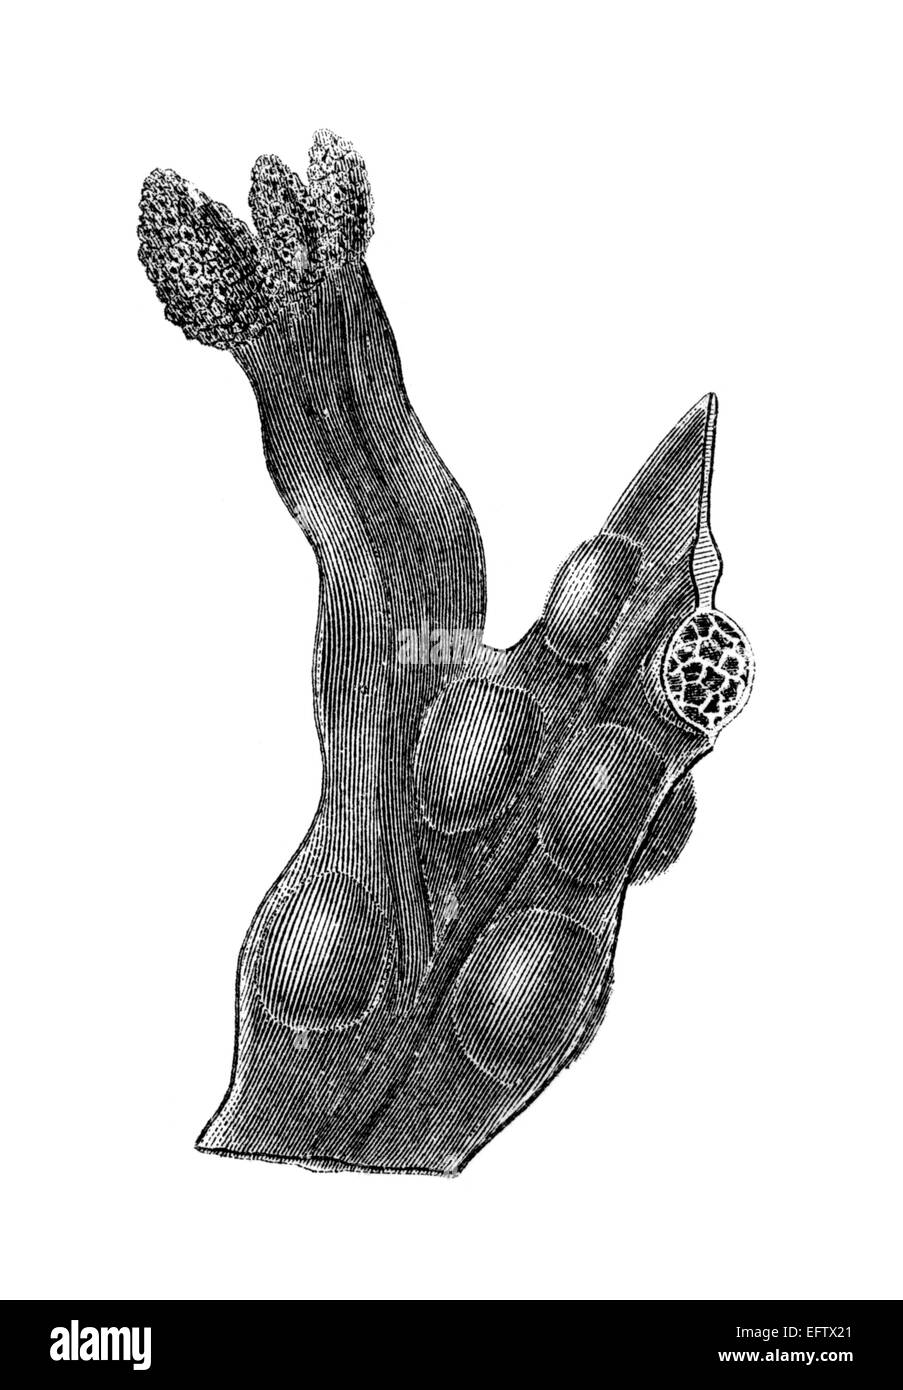 La gravure de l'époque victorienne d'une algue. Image restaurée numériquement à partir d'un milieu du xixe siècle l'encyclopédie. Banque D'Images